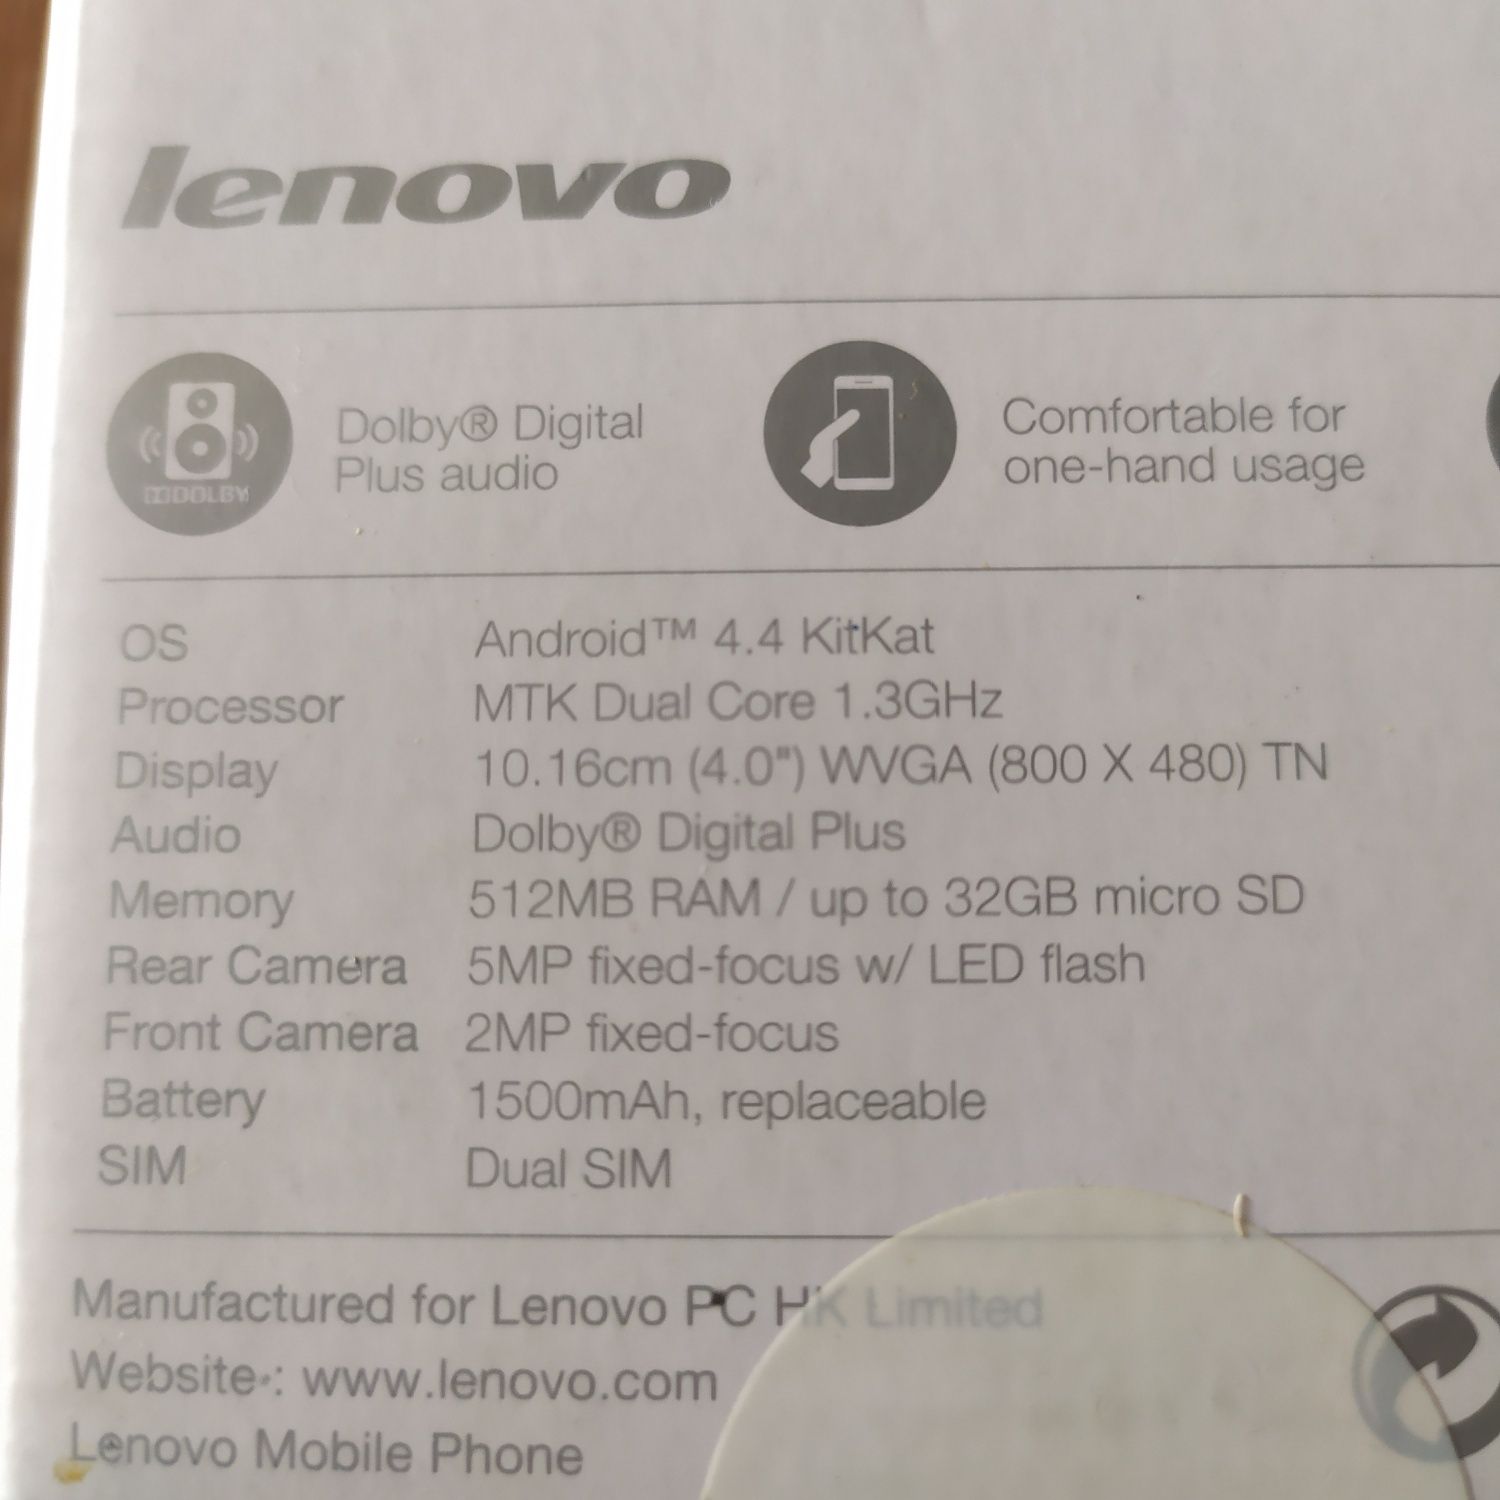 Смартфон Lenovo A319